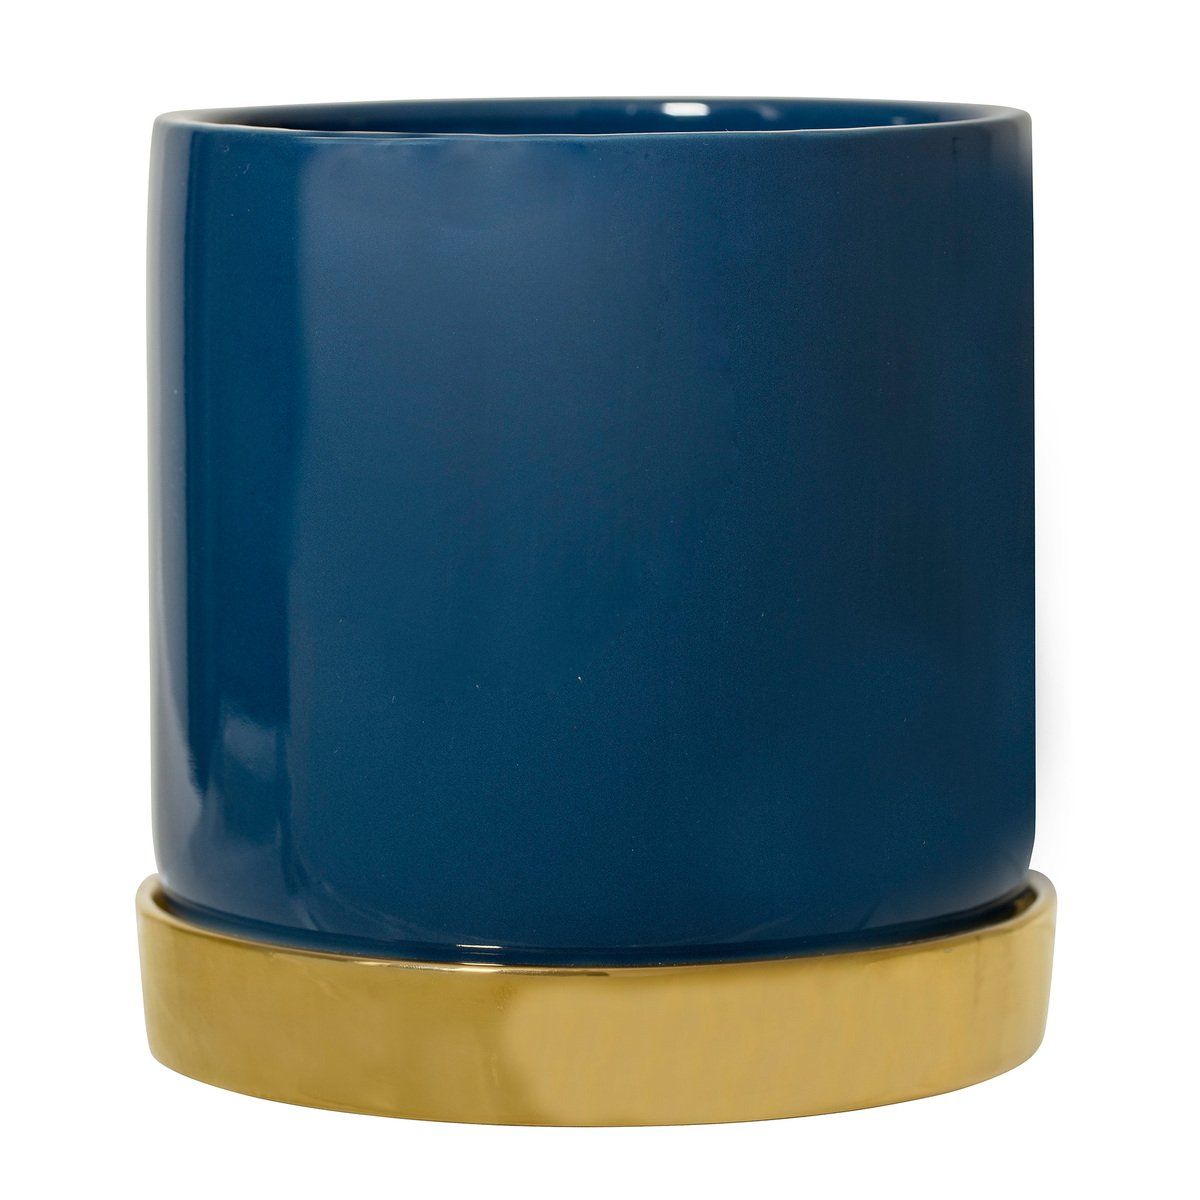 Pot GOLD en pierre bleu nuit avec coupelle dorée